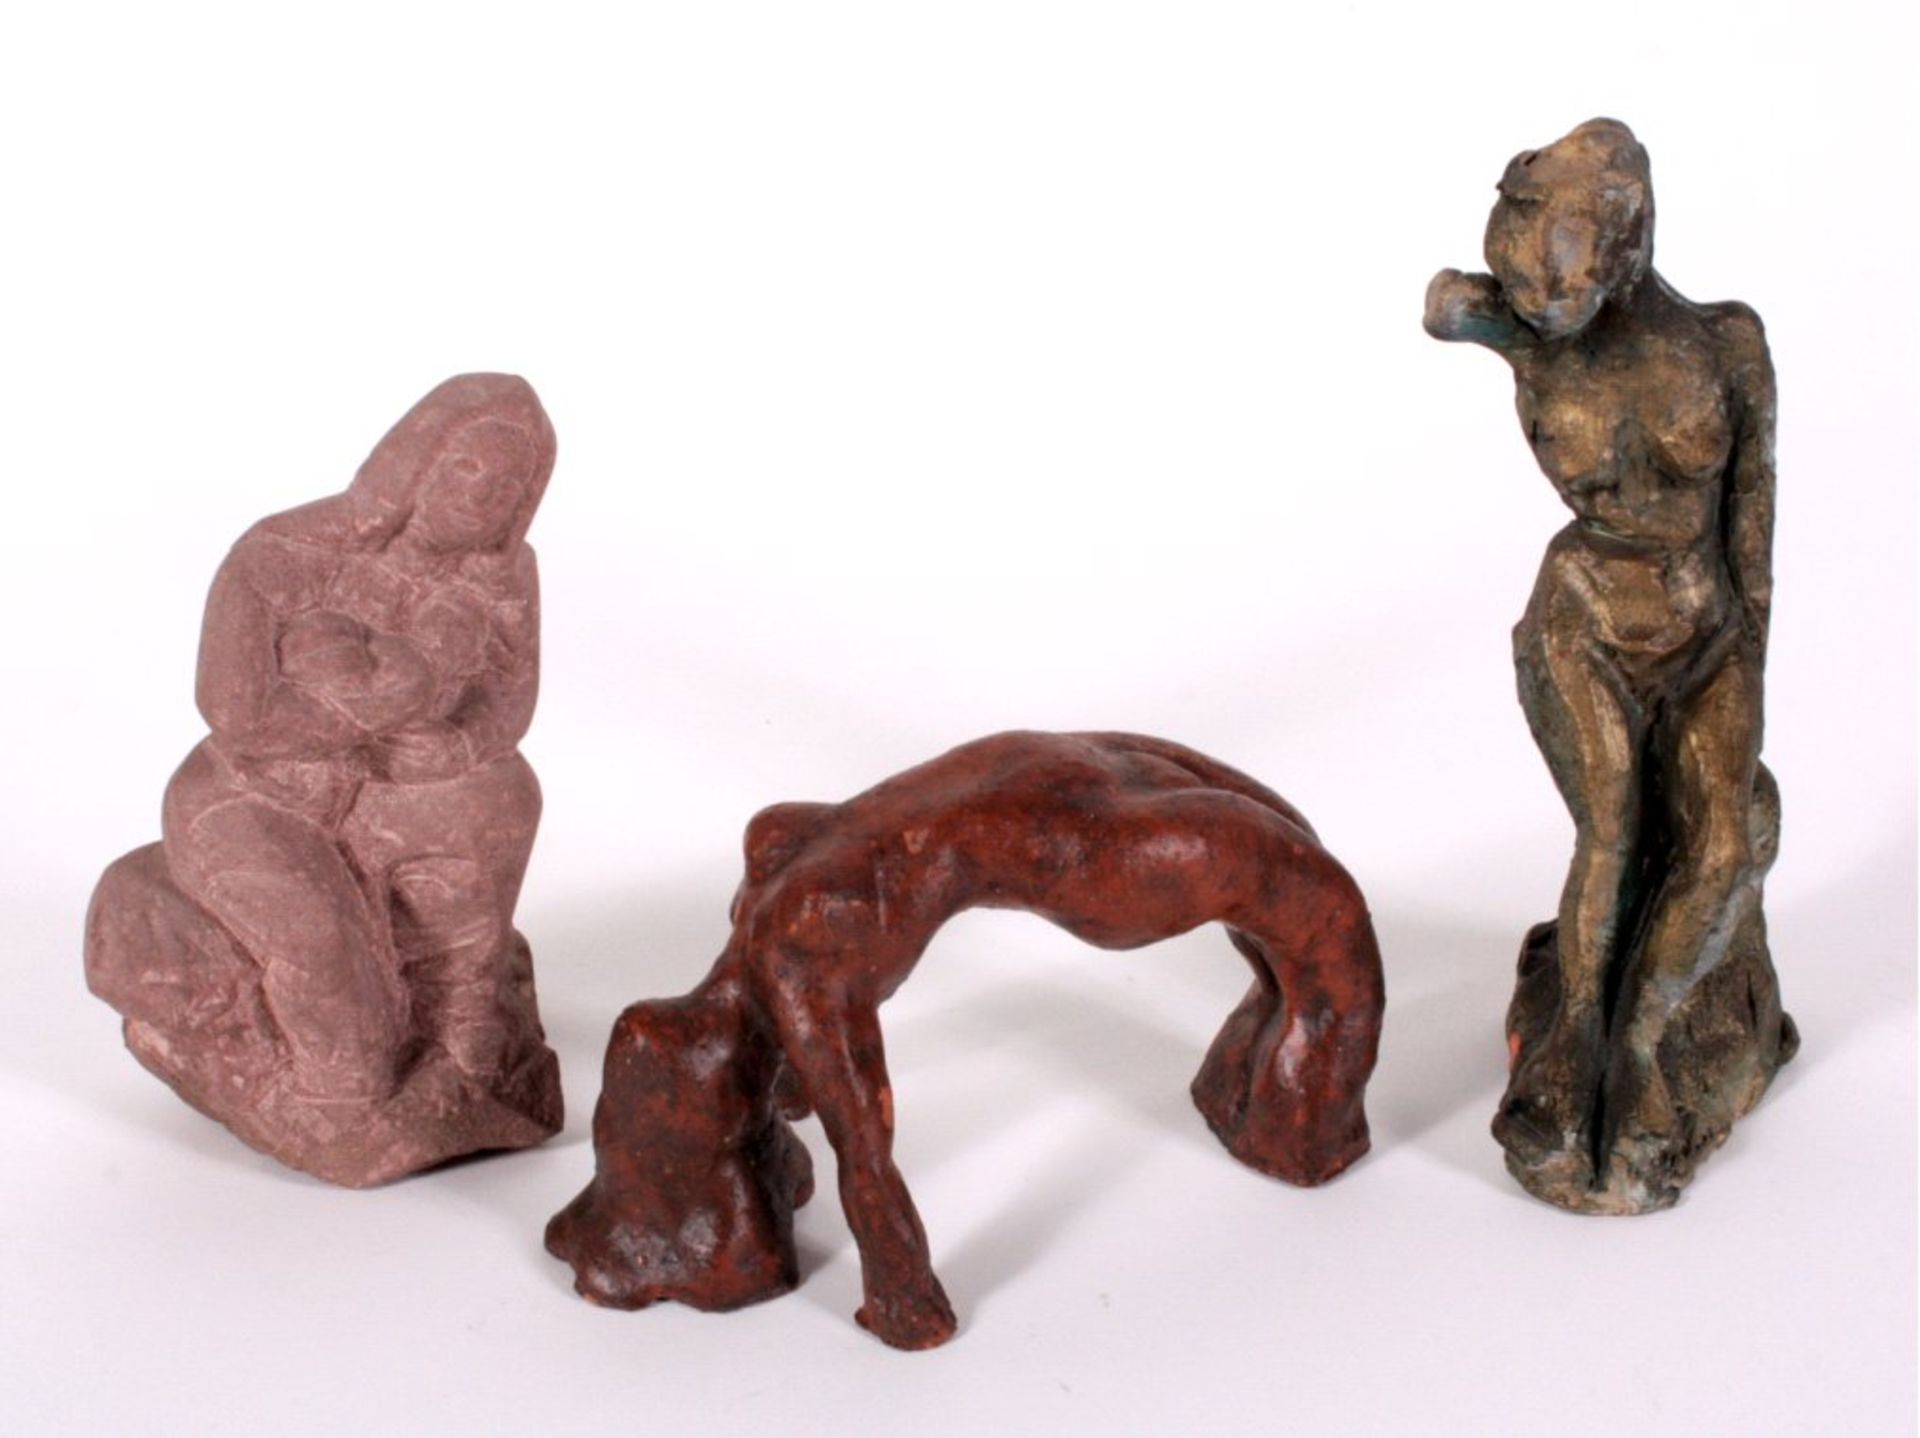 Banholzer (?-?), 3 weibliche Skulpturen aus Sandstein u. Tonverschieden lasiert, ca. H-9, 16 und